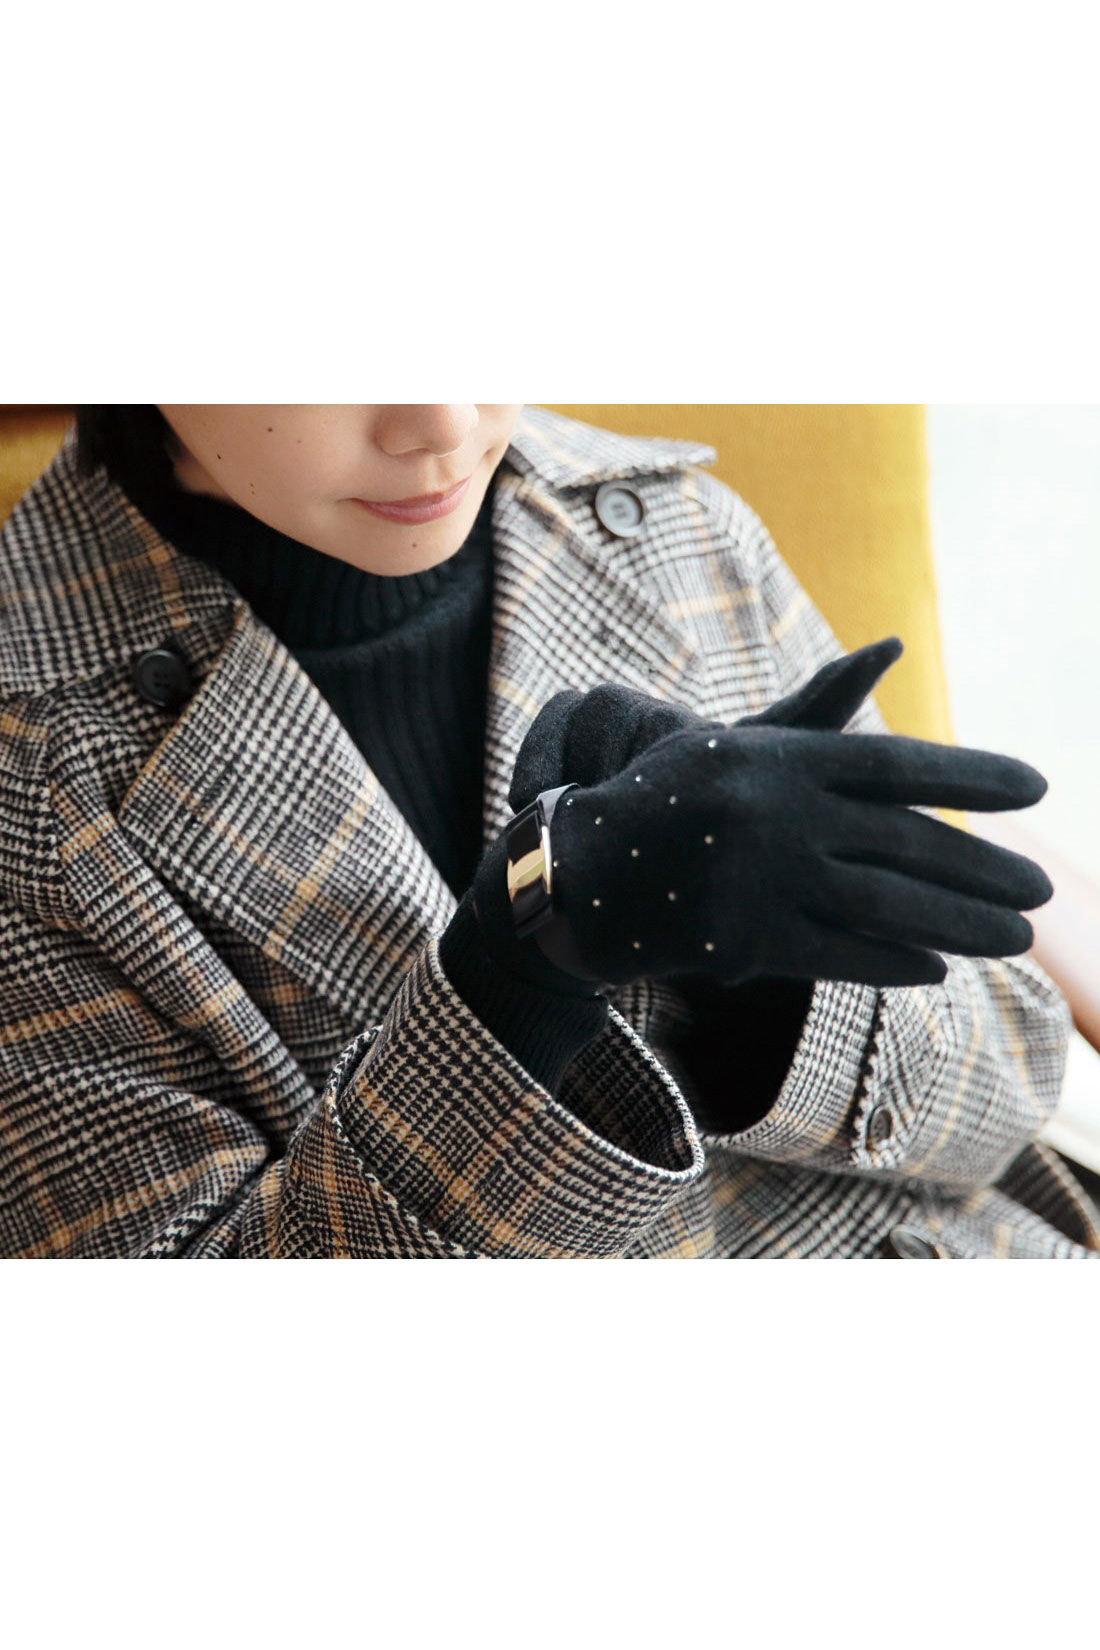 Live in  comfort|リブ イン コンフォート　ラインストーンがキラキラ輝くニットソー手袋〈ブラック〉|※着用イメージです。お届けするカラーとは異なります。